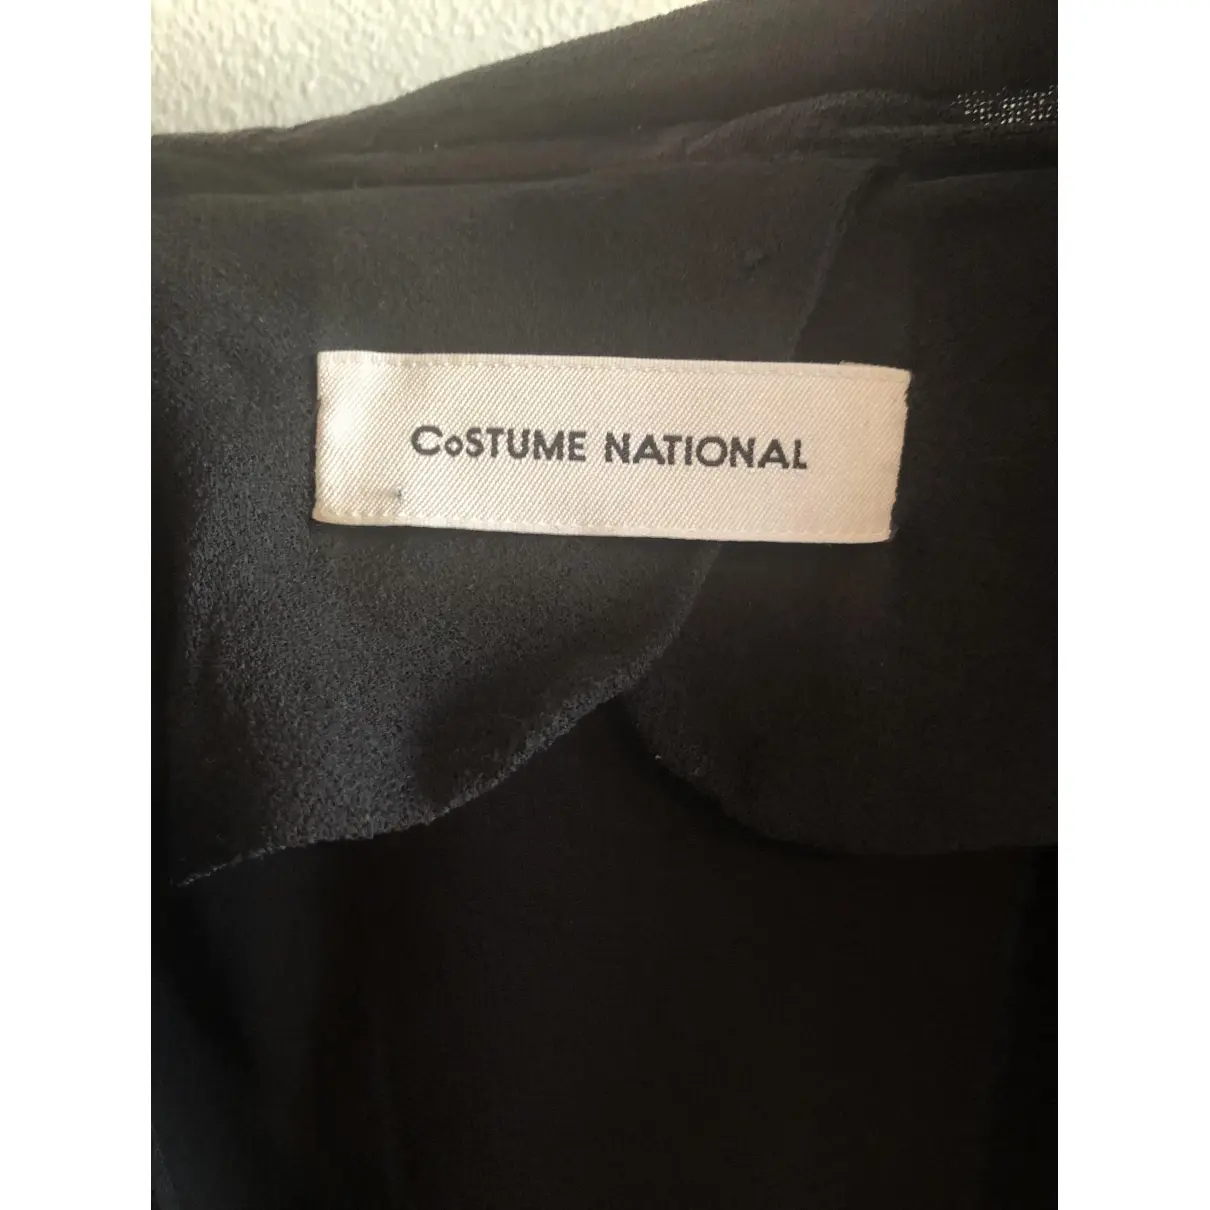 Buy Costume National Wool blouse online - Vintage